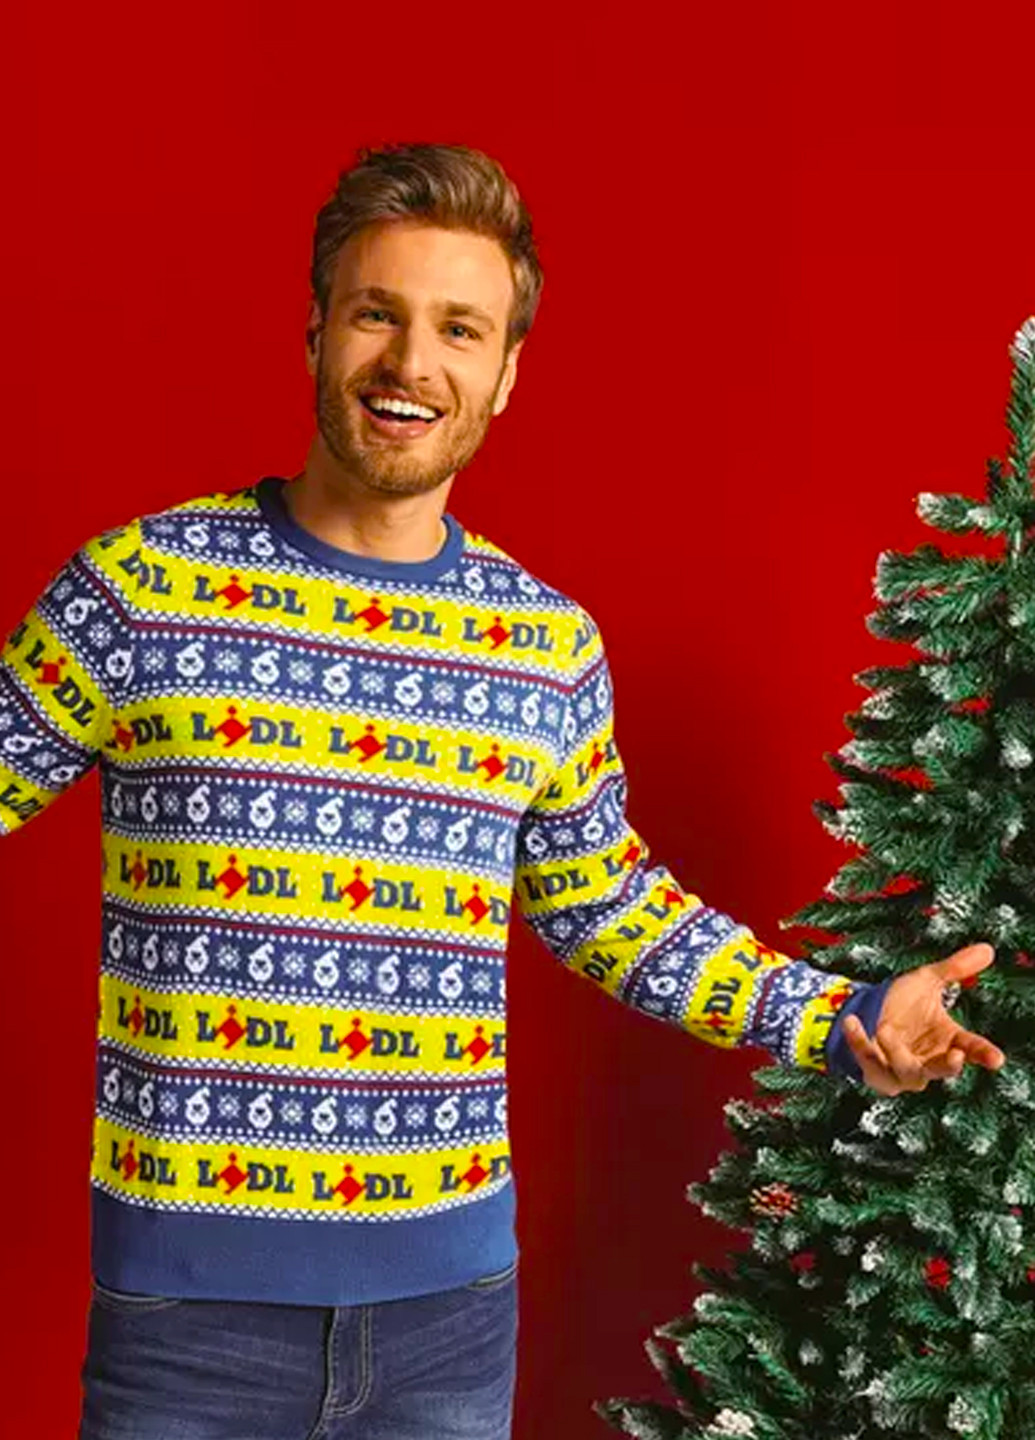 Комбинированный рождественский свитер Livergy